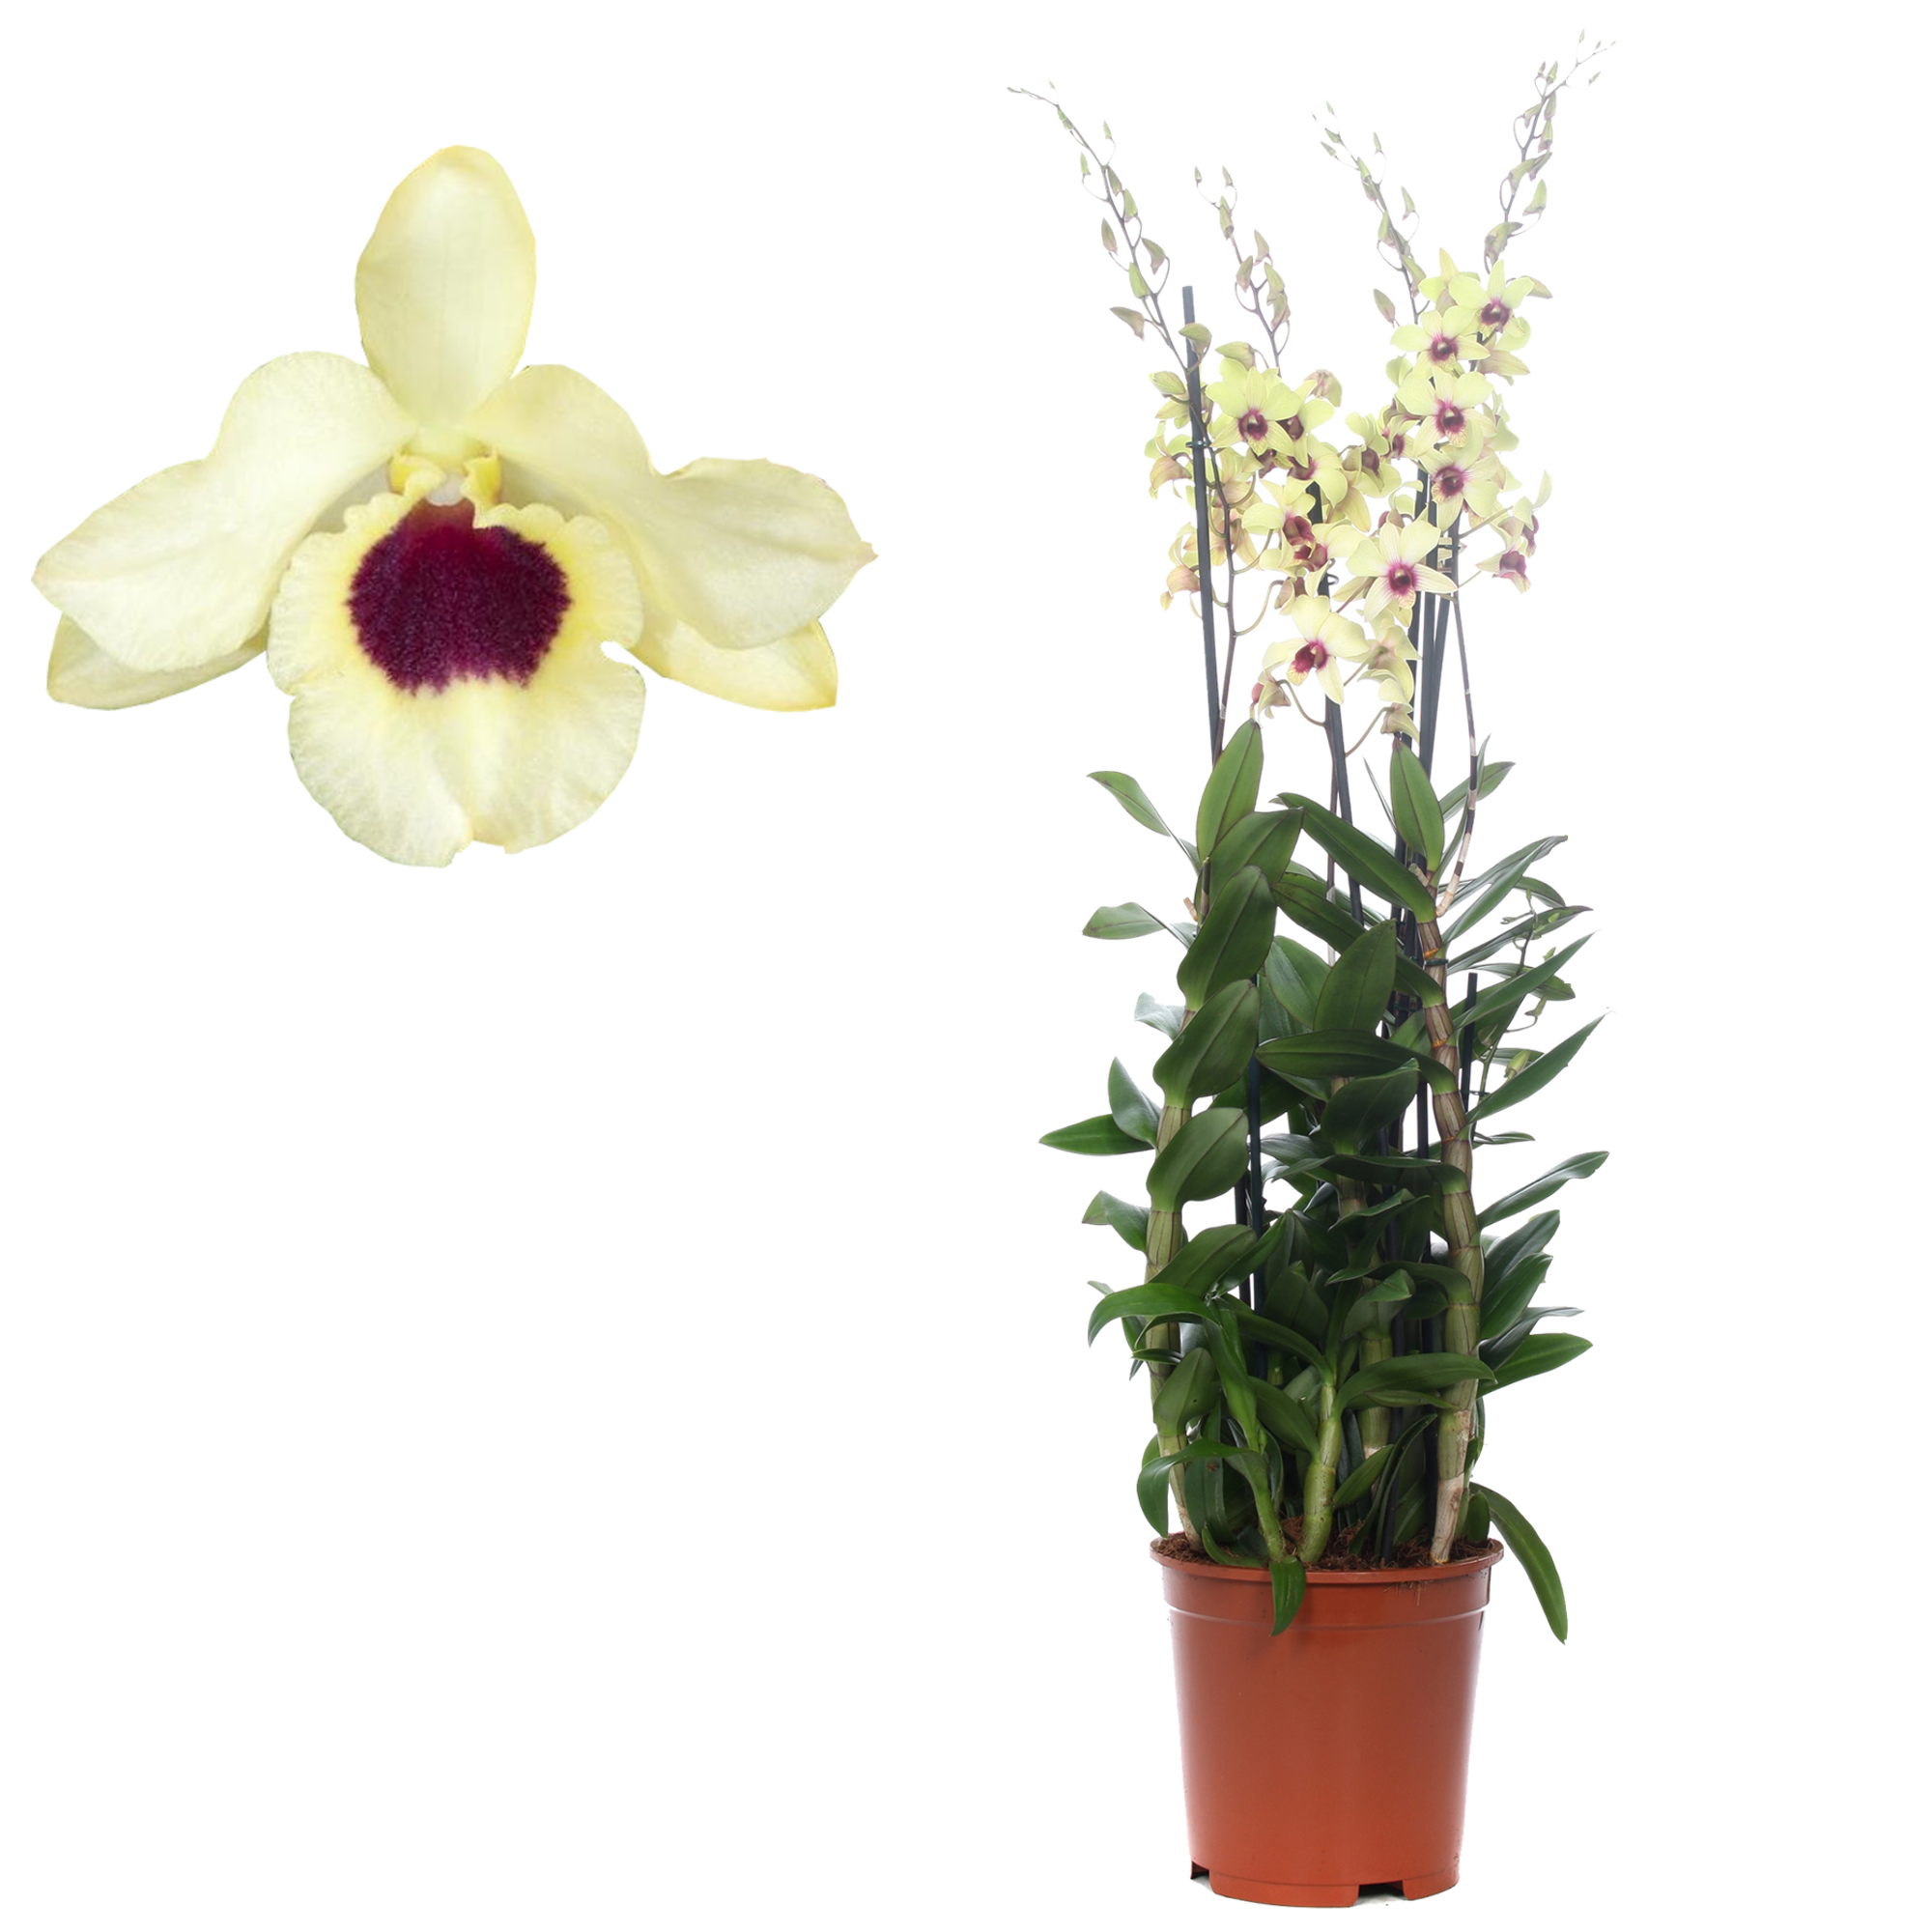 Dendrobium-Orchidee 4 Rispen creme/gelb, 21 cm Topf + product picture